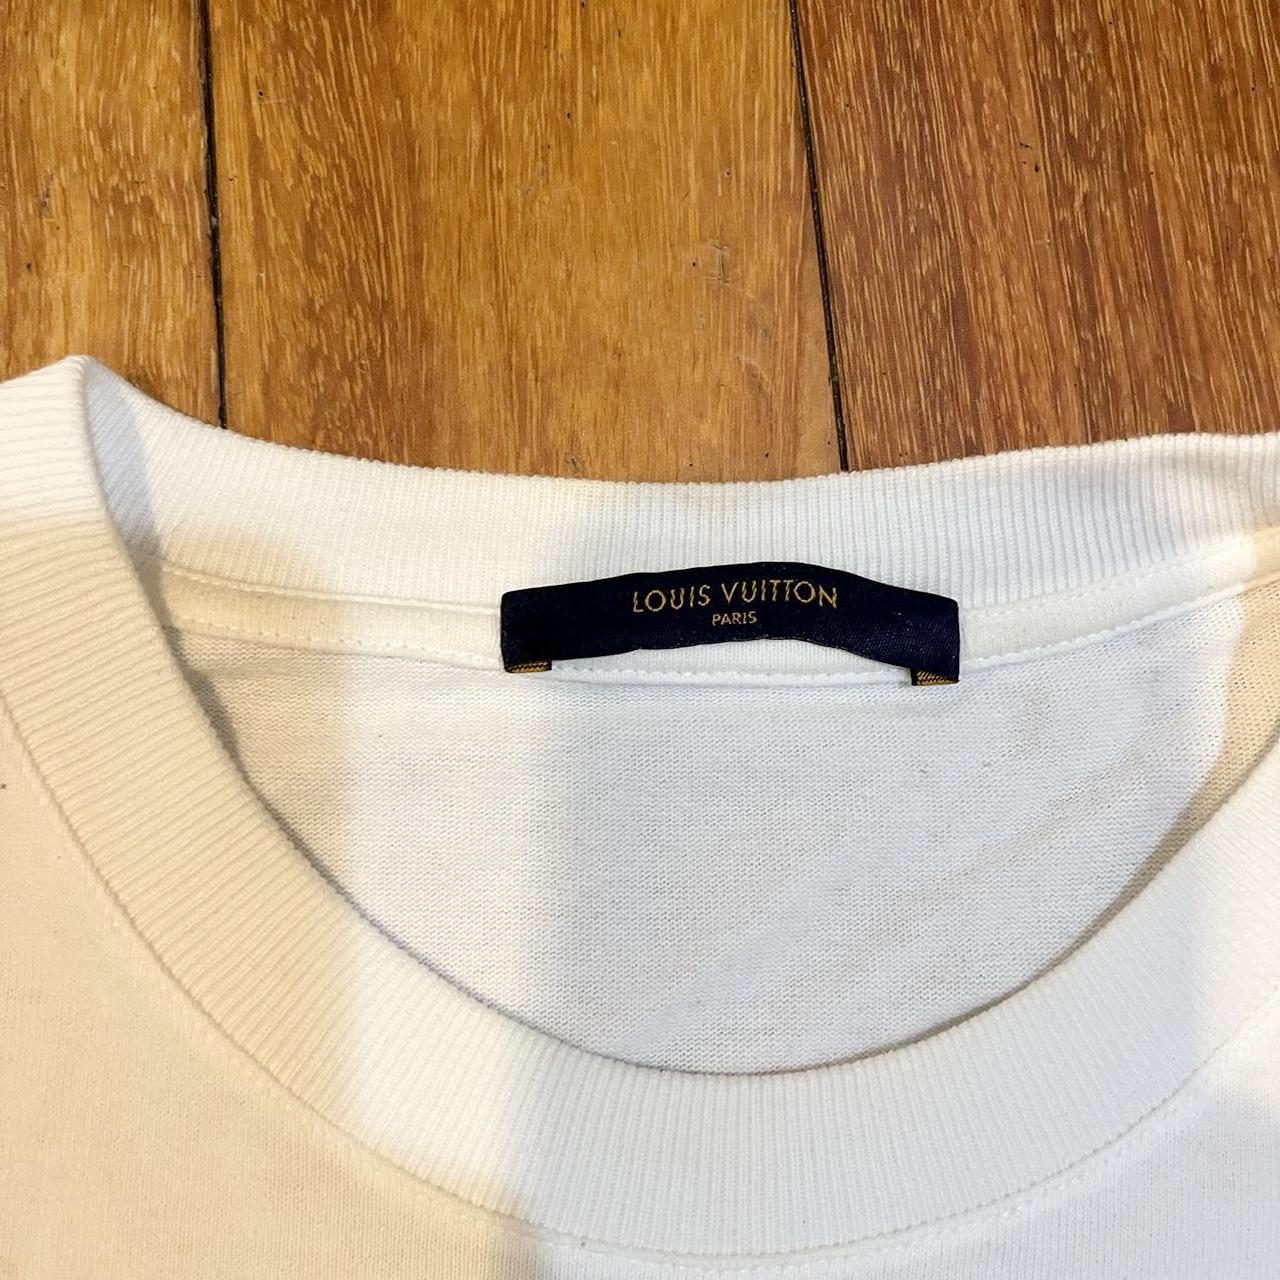 LOUIS VUITTON Labels  Louis vuitton, Vintage tshirts, Vuitton